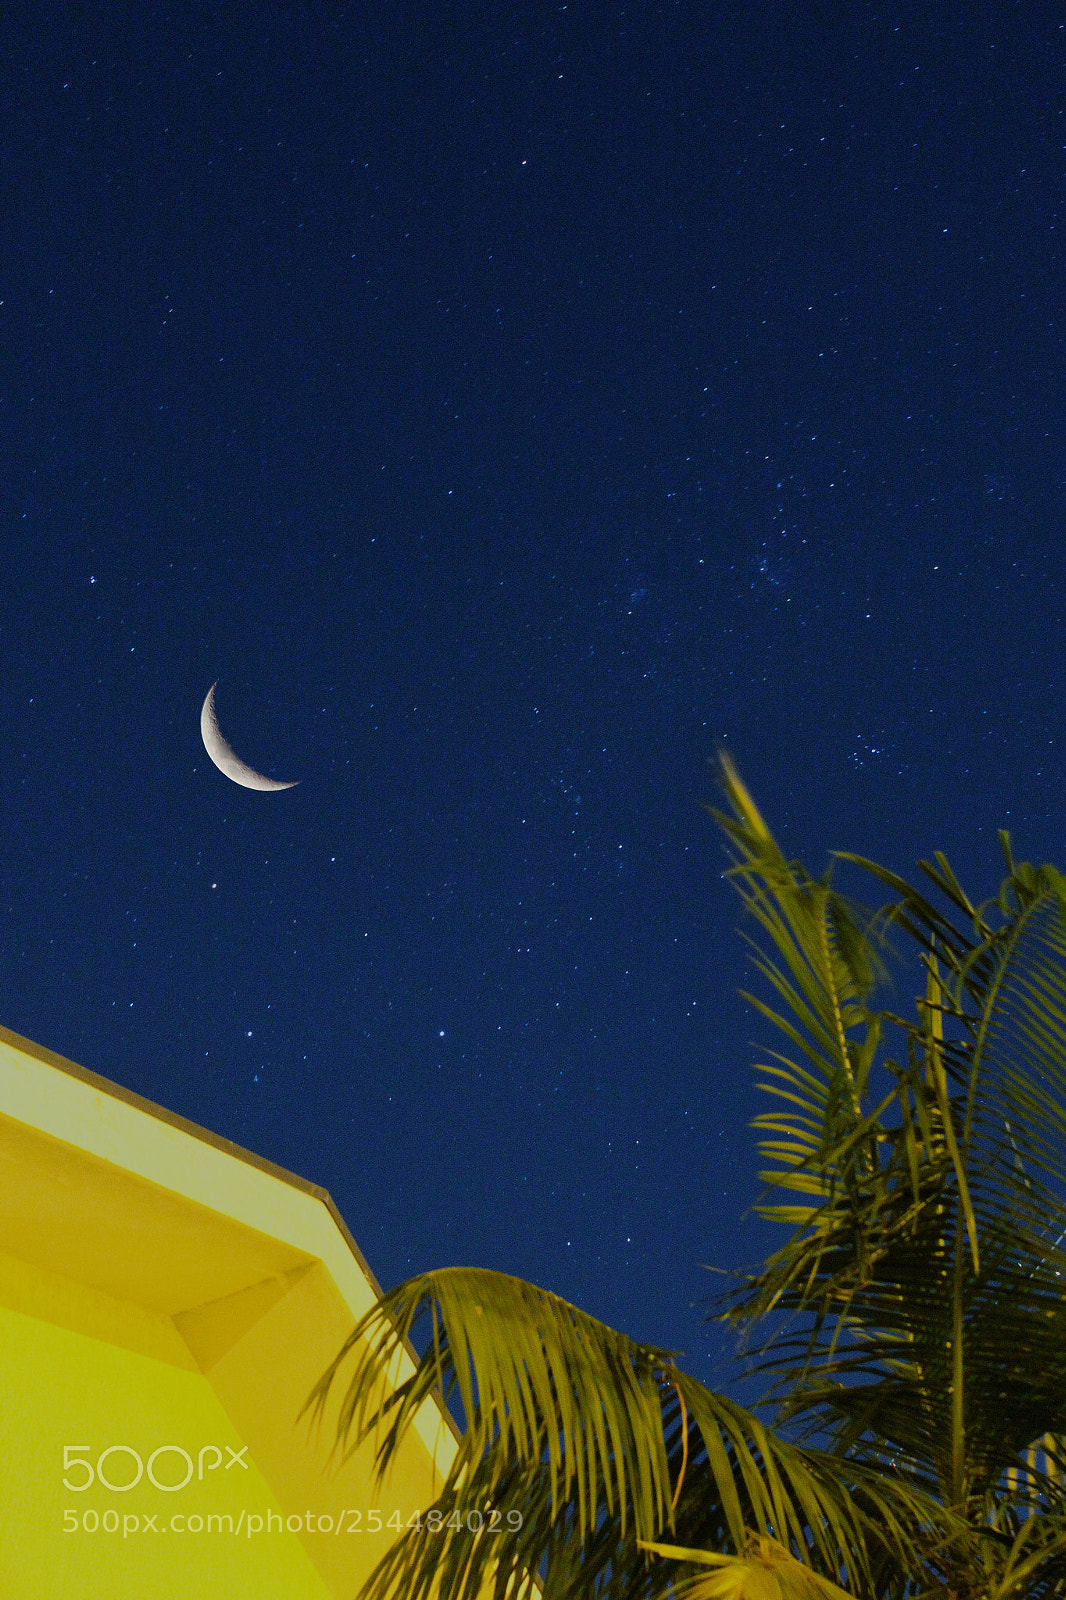 Canon EOS 1200D (EOS Rebel T5 / EOS Kiss X70 / EOS Hi) sample photo. A lua / the moon photography